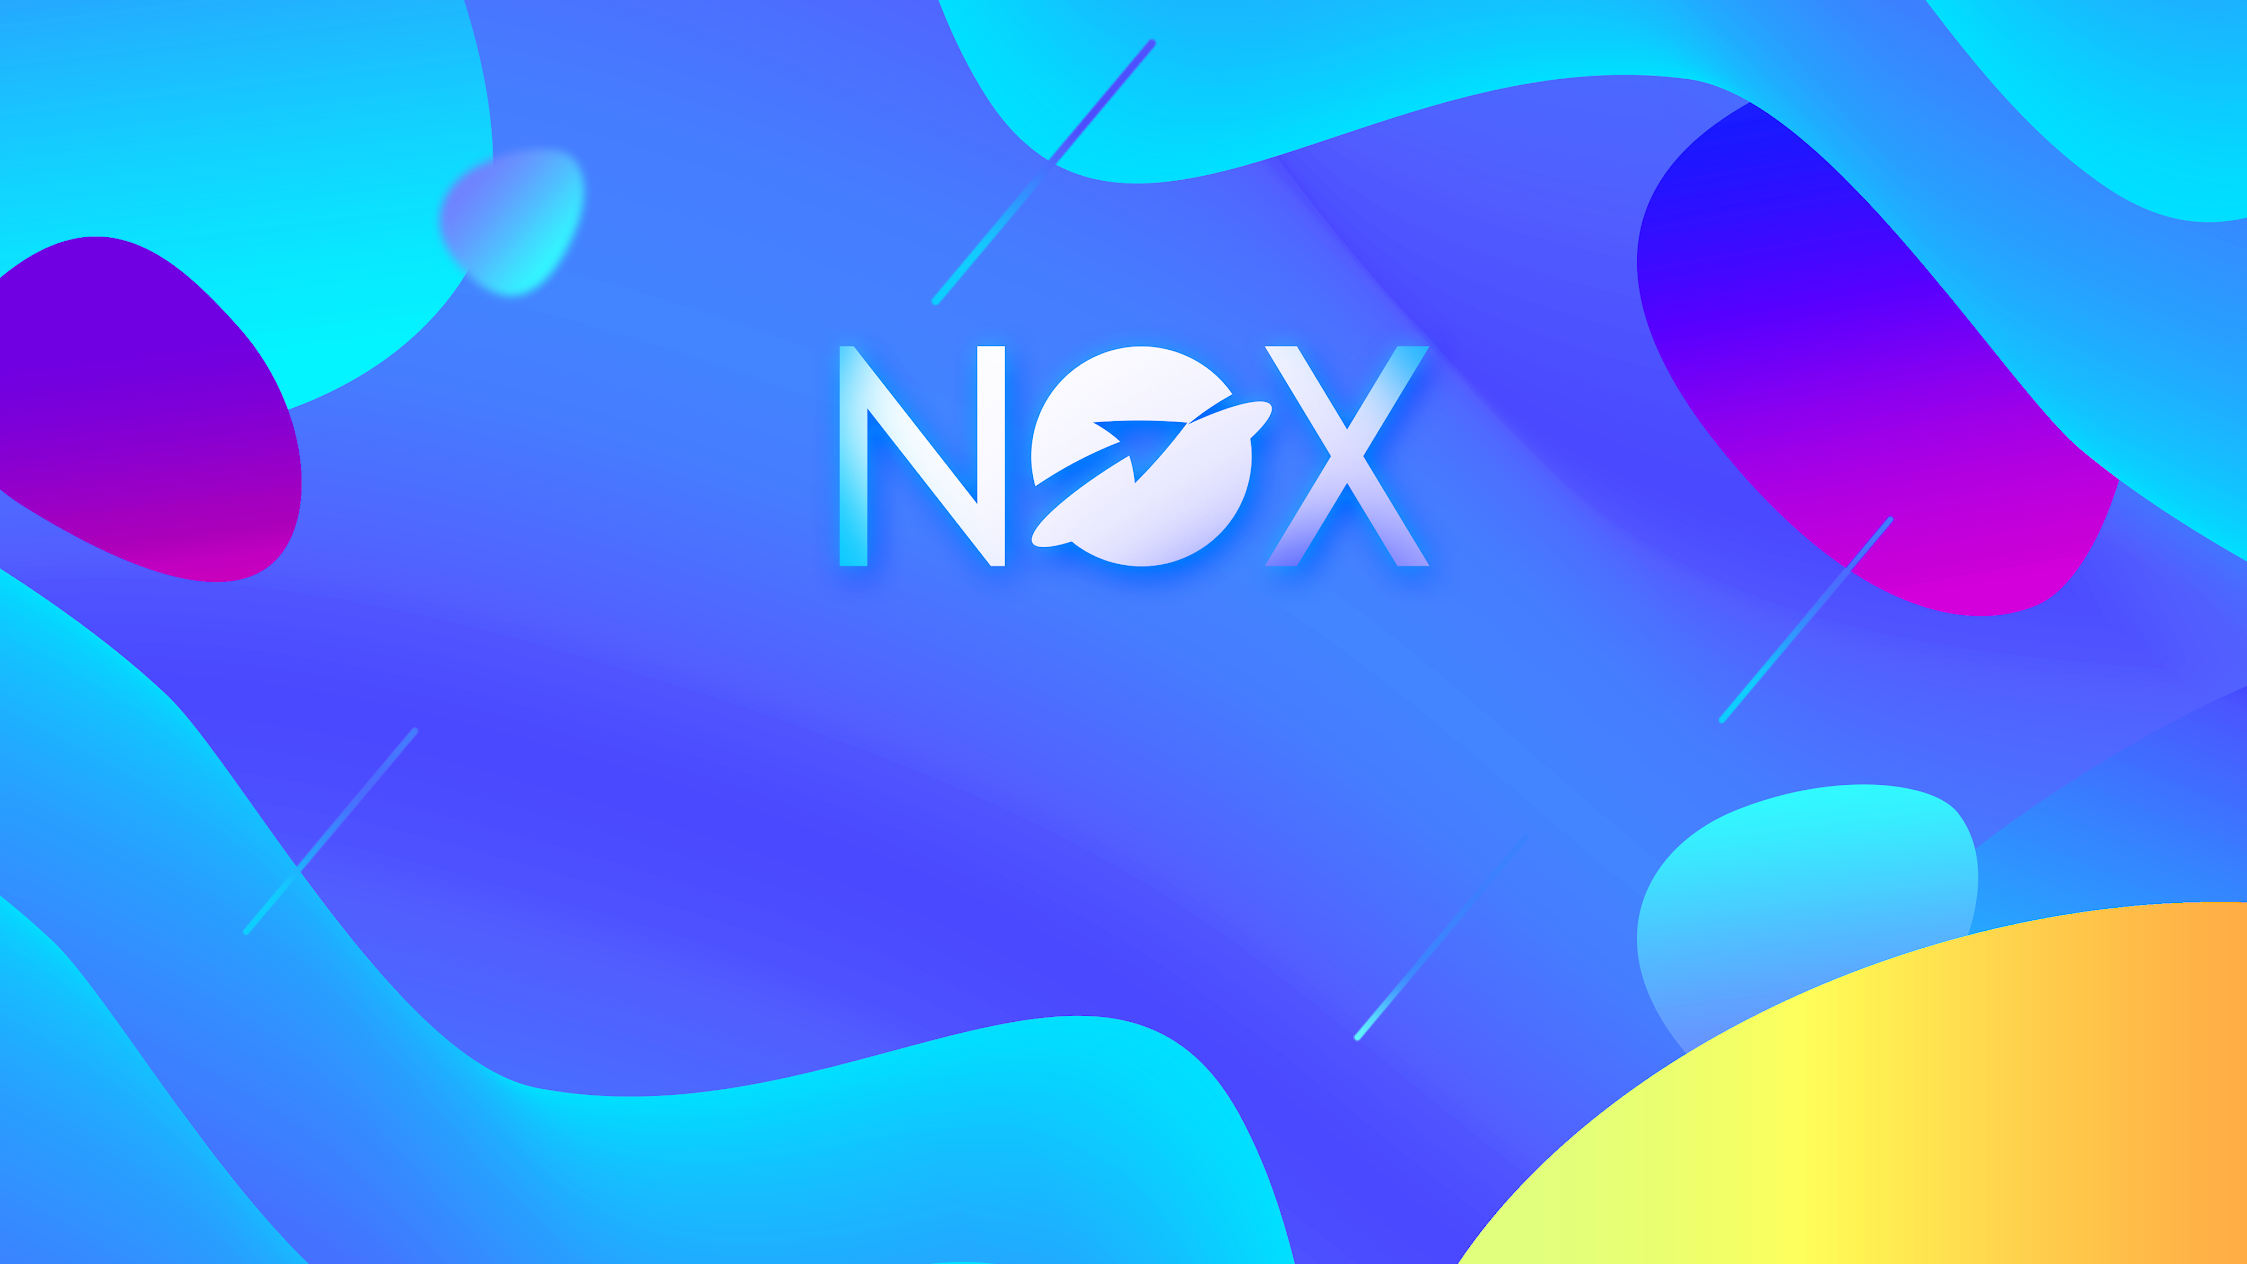 Nox Ltd.